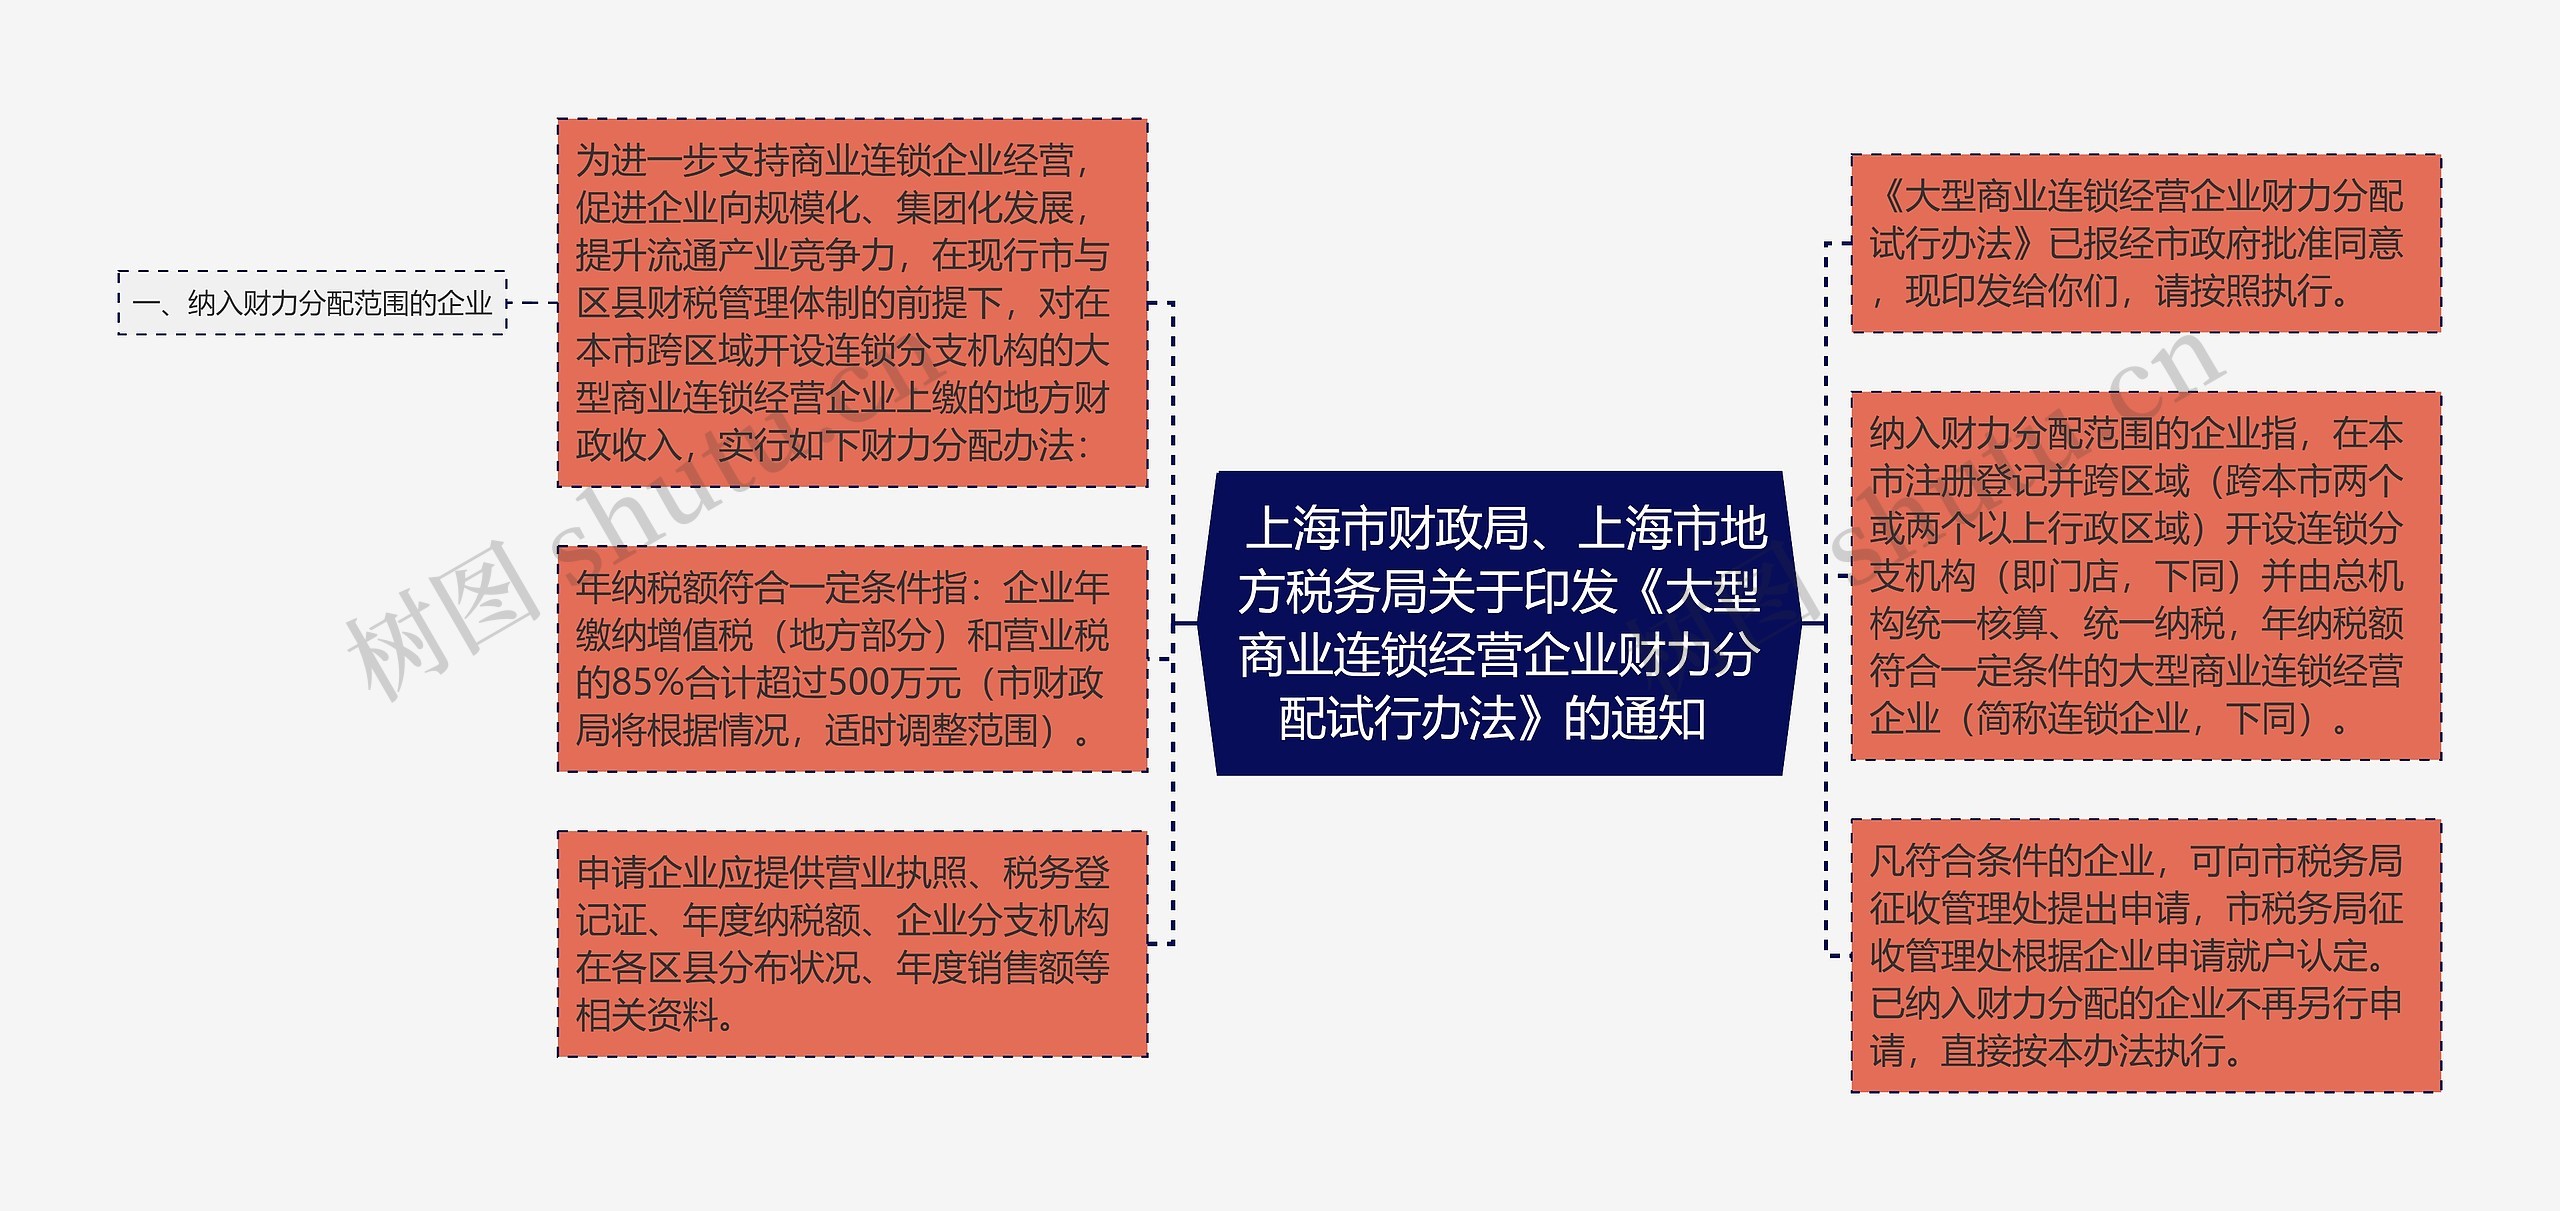  上海市财政局、上海市地方税务局关于印发《大型商业连锁经营企业财力分配试行办法》的通知 